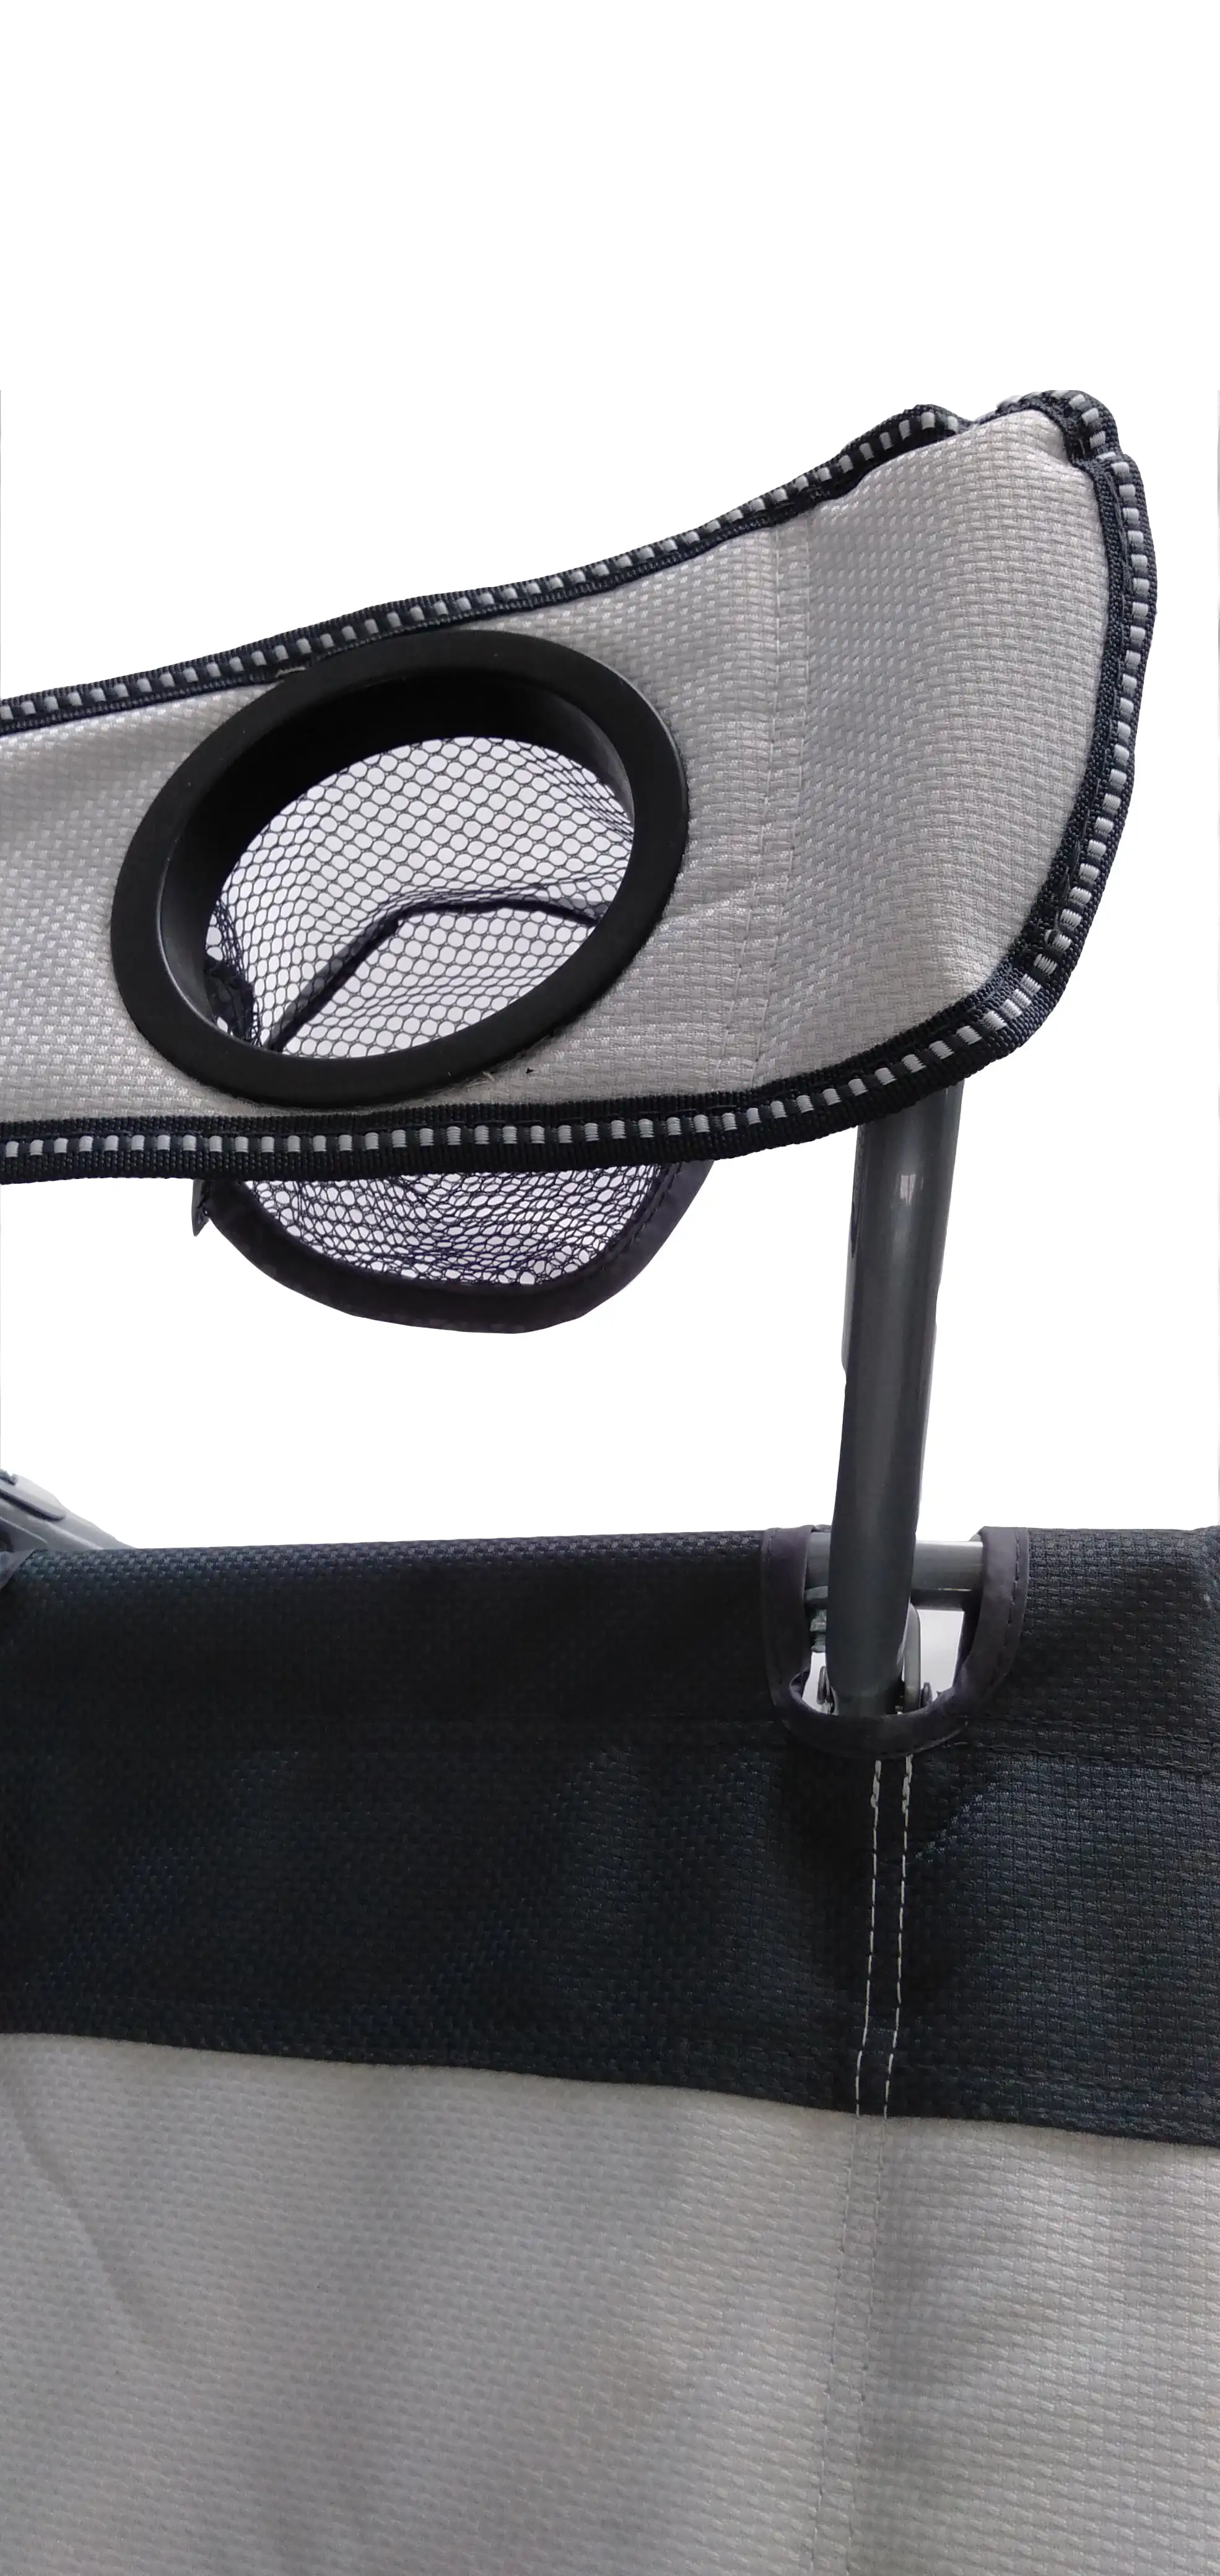 Сетчатое кресло-качалка DZQ Tension 2 в 1, серое и черное, съемные качалки, для взрослых